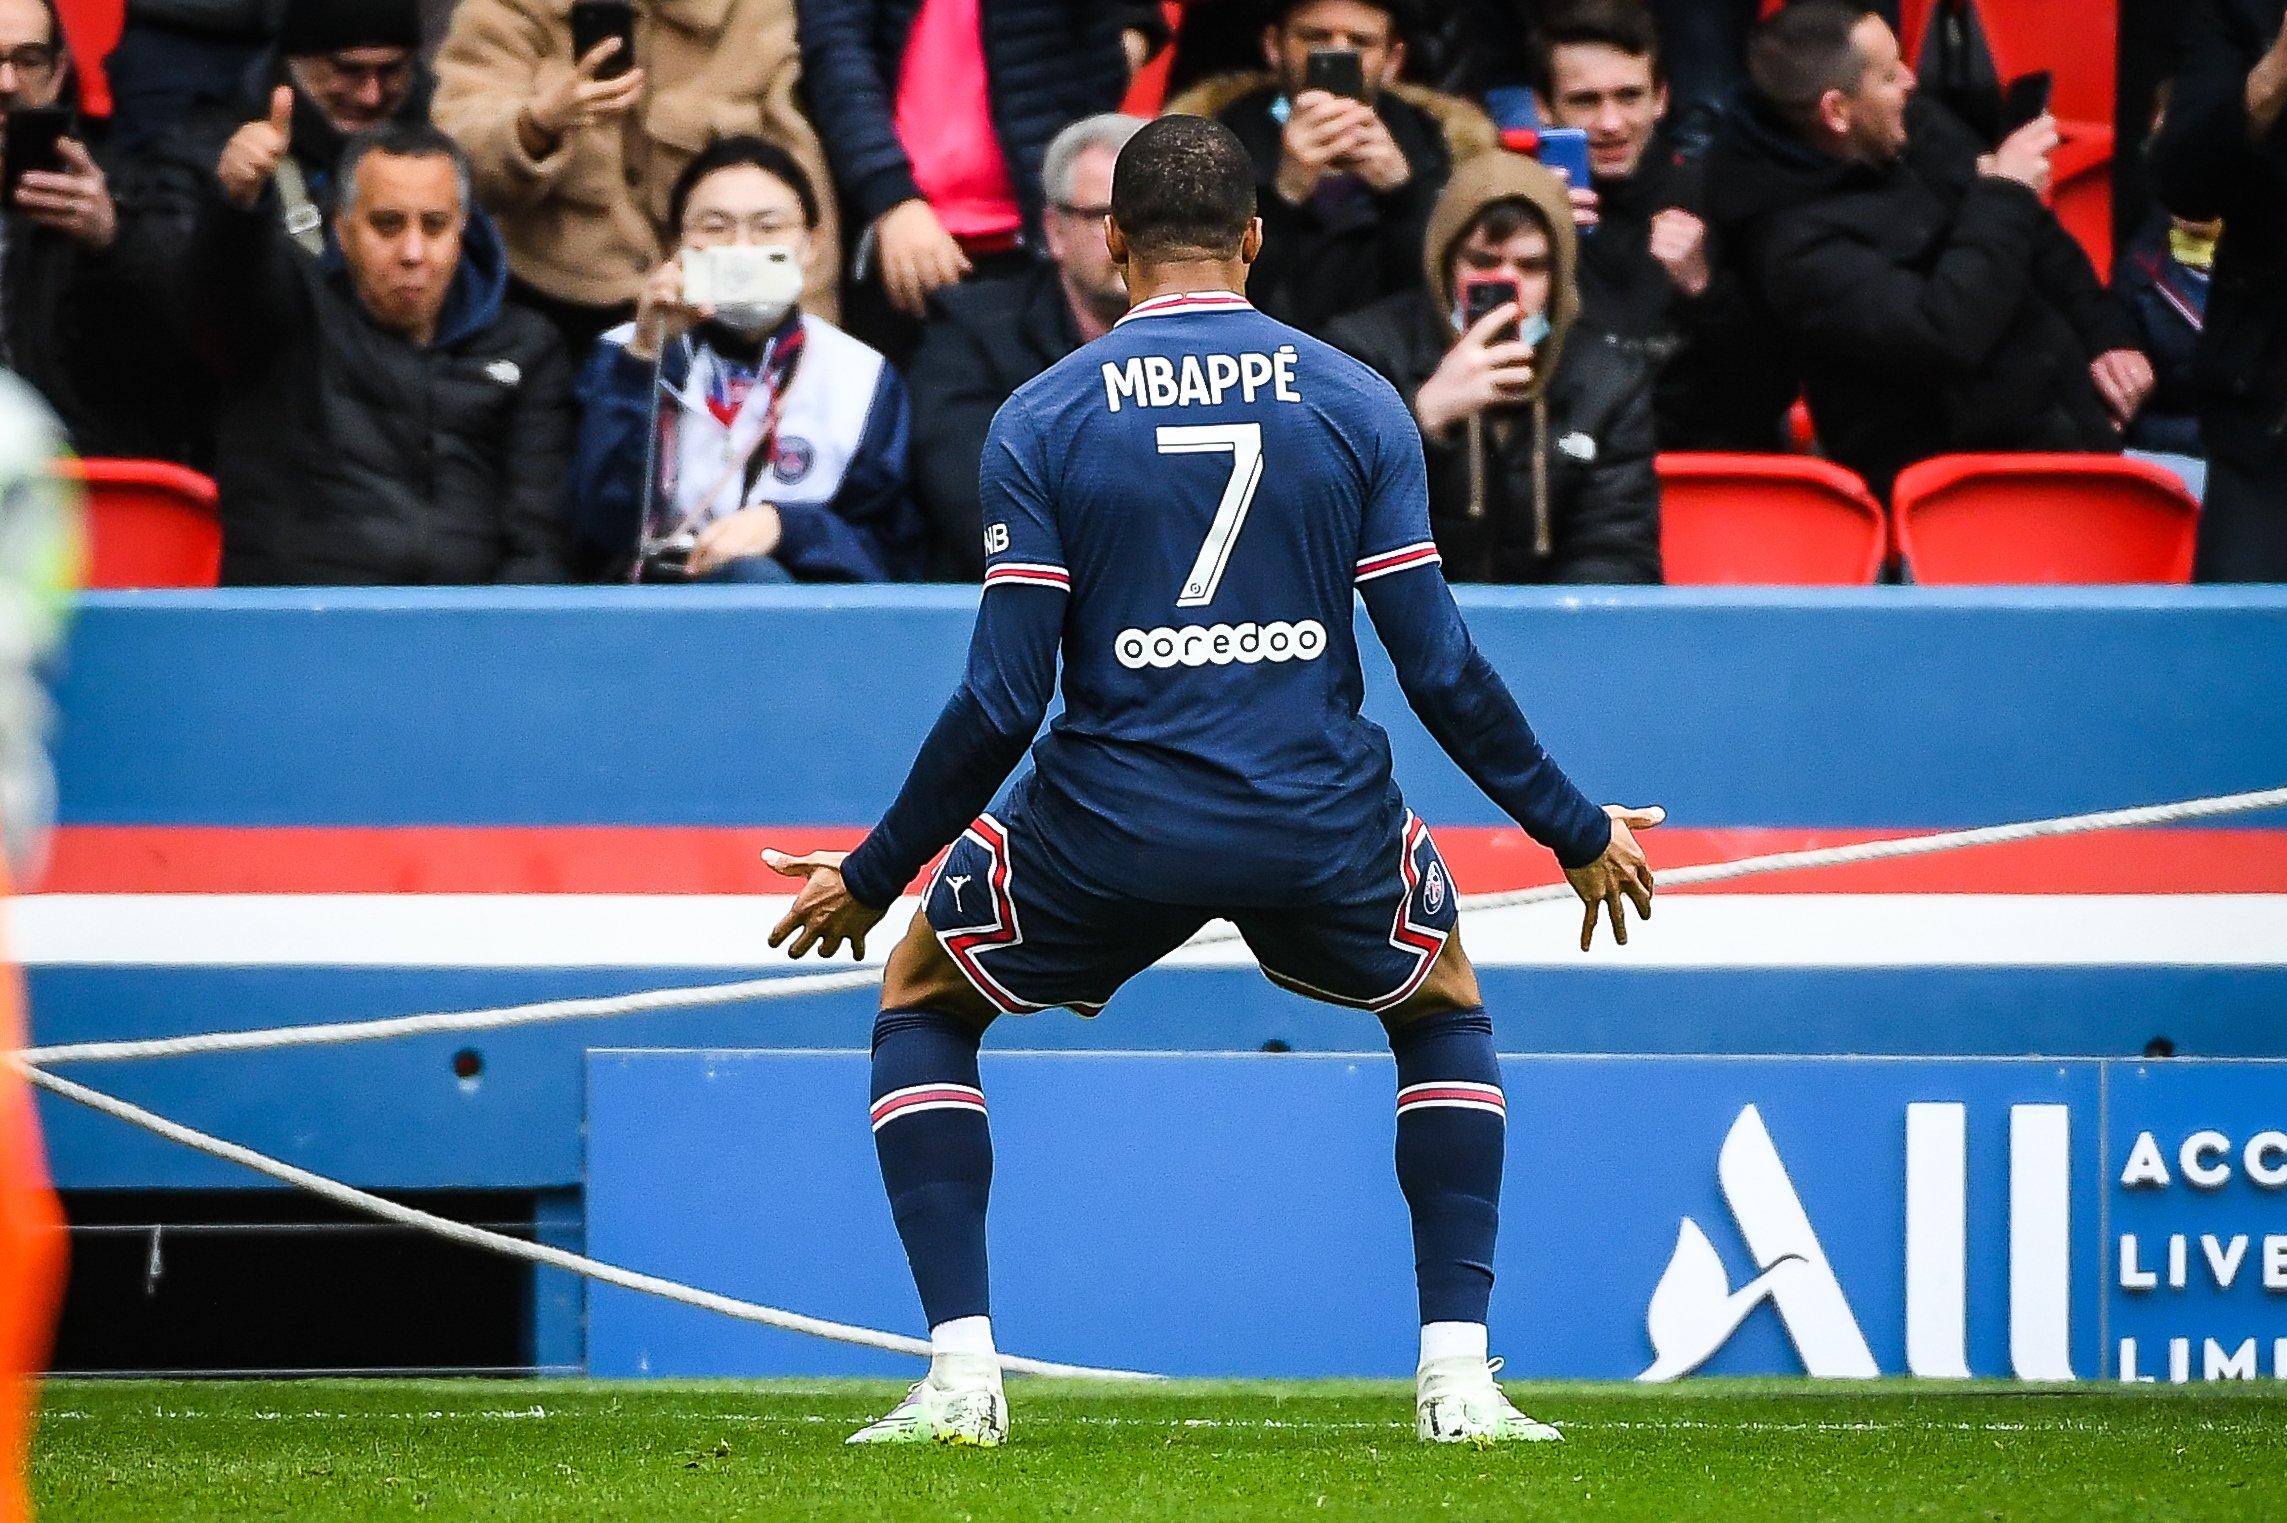 Adidas pacta amb Florentino Pérez el número que portarà Mbappé al Reial Madrid